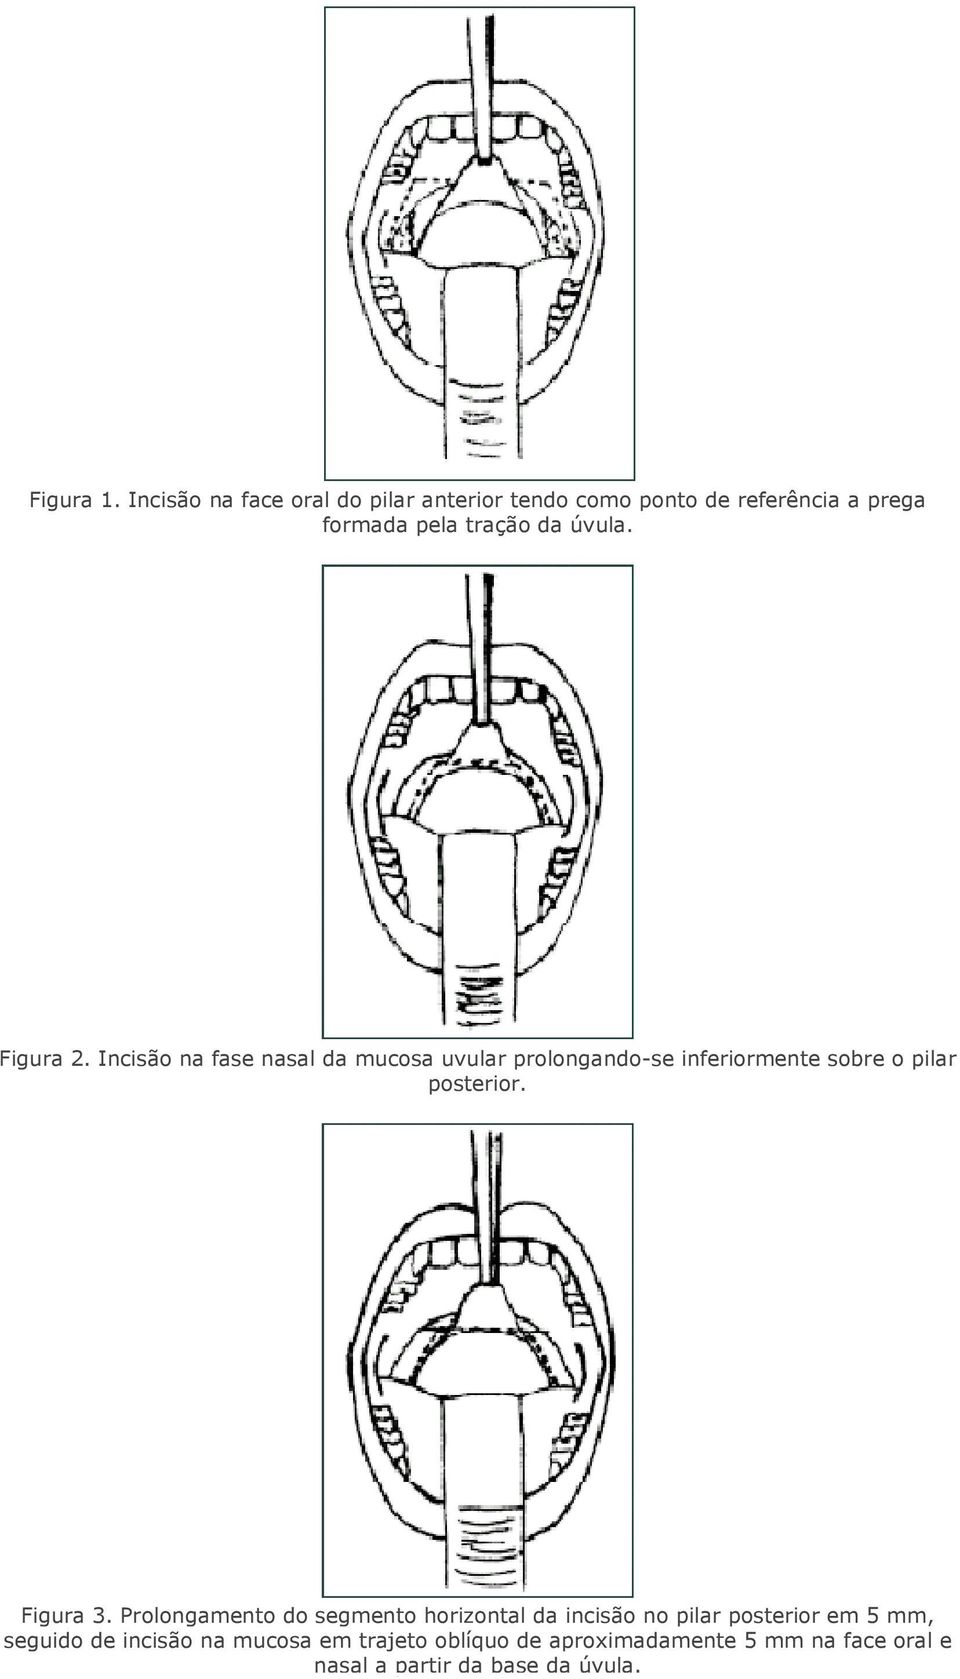 Figura 2. Incisão na fase nasal da mucosa uvular prolongando-se inferiormente sobre o pilar posterior.